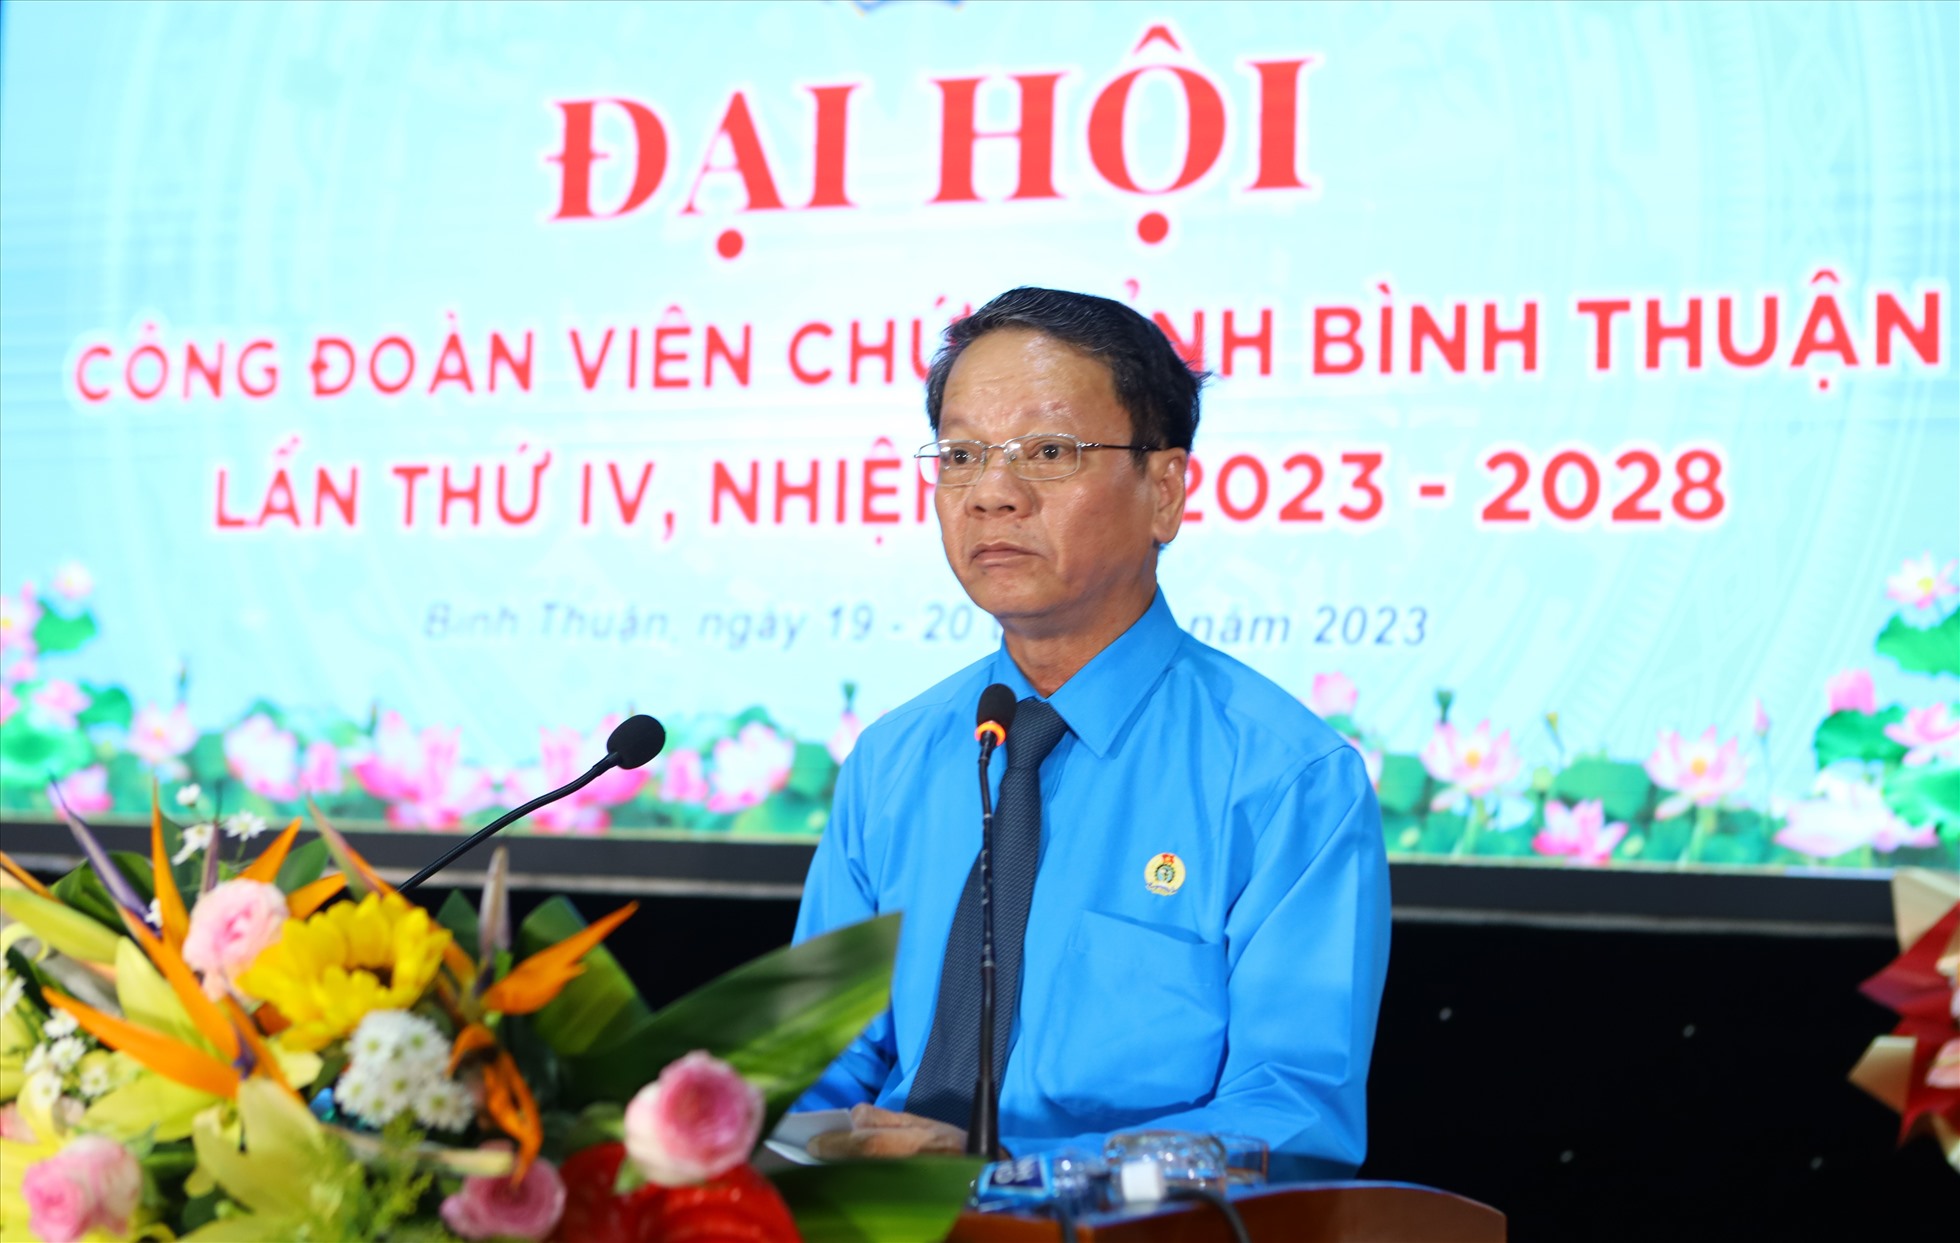 Đồng chí Nguyễn Xuân Phối, chủ tịch LĐLĐ tỉnh Bình Thuận phát biểu chỉ đạo tại Đại hội. Ảnh: Duy Tuấn